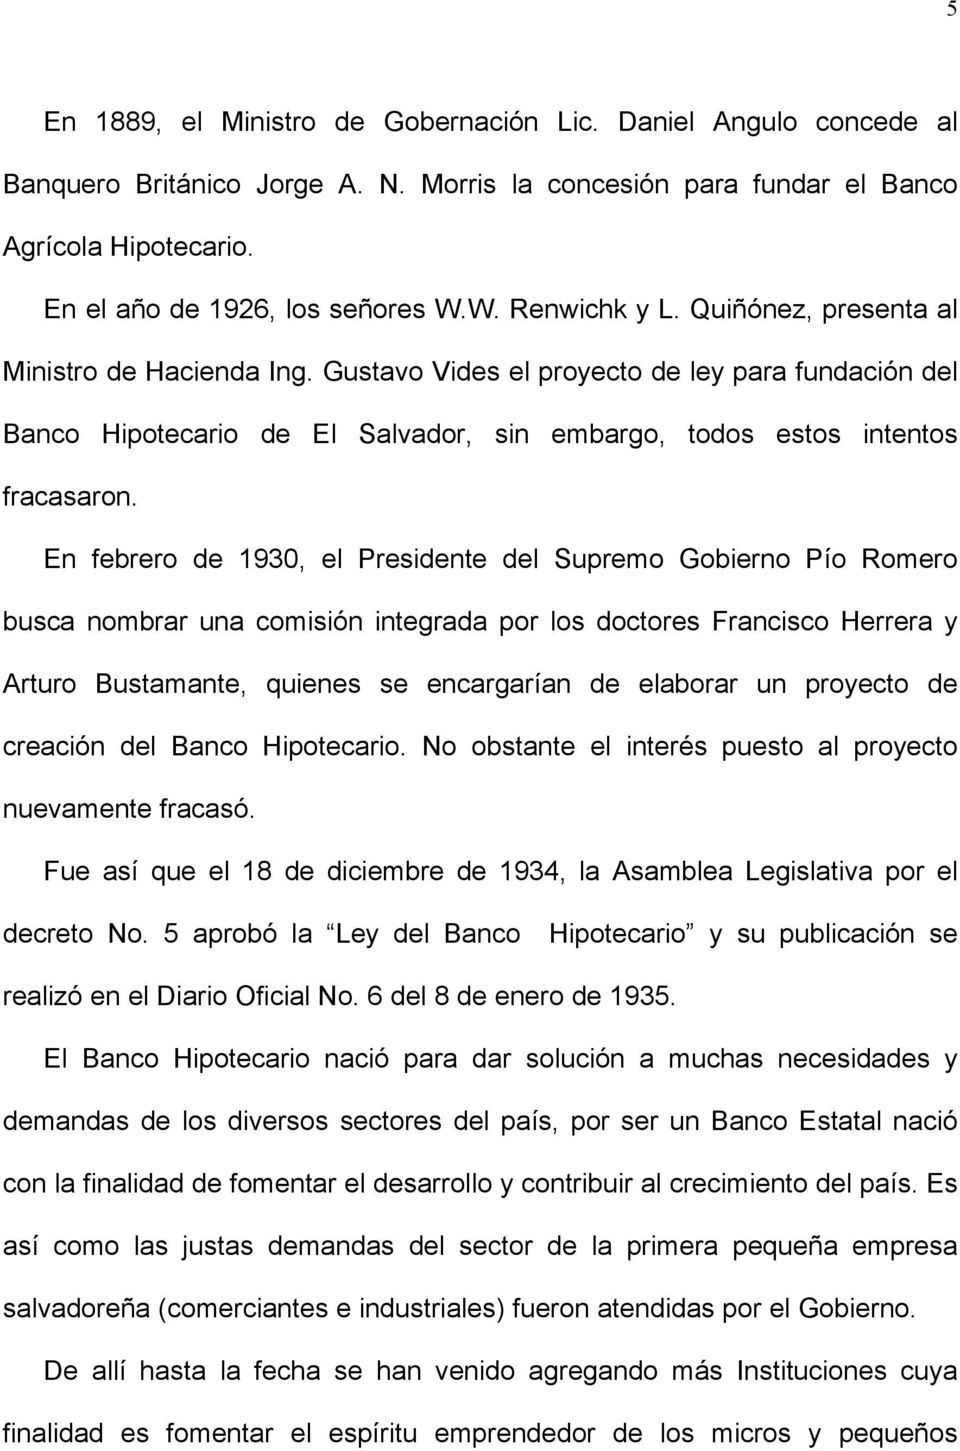 En febrero de 1930, el Presidente del Supremo Gobierno Pío Romero busca nombrar una comisión integrada por los doctores Francisco Herrera y Arturo Bustamante, quienes se encargarían de elaborar un